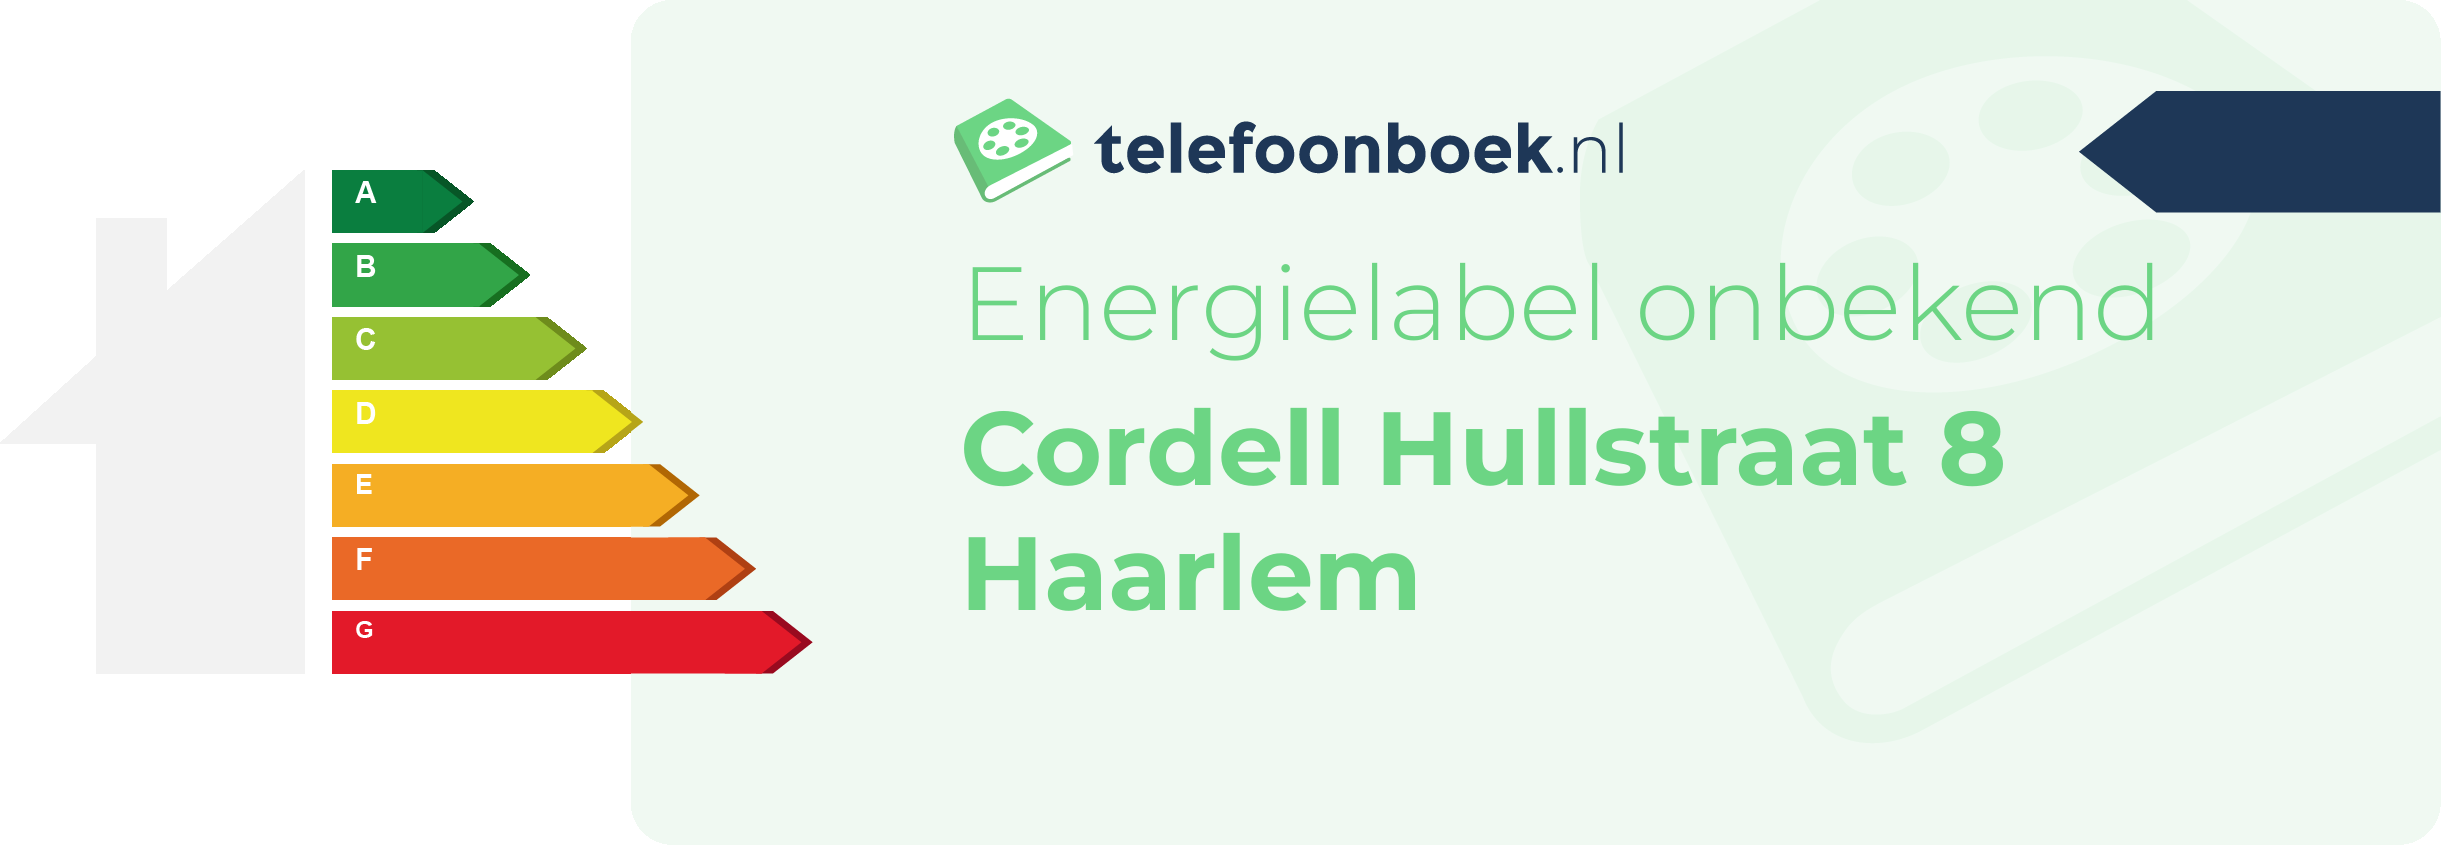 Energielabel Cordell Hullstraat 8 Haarlem